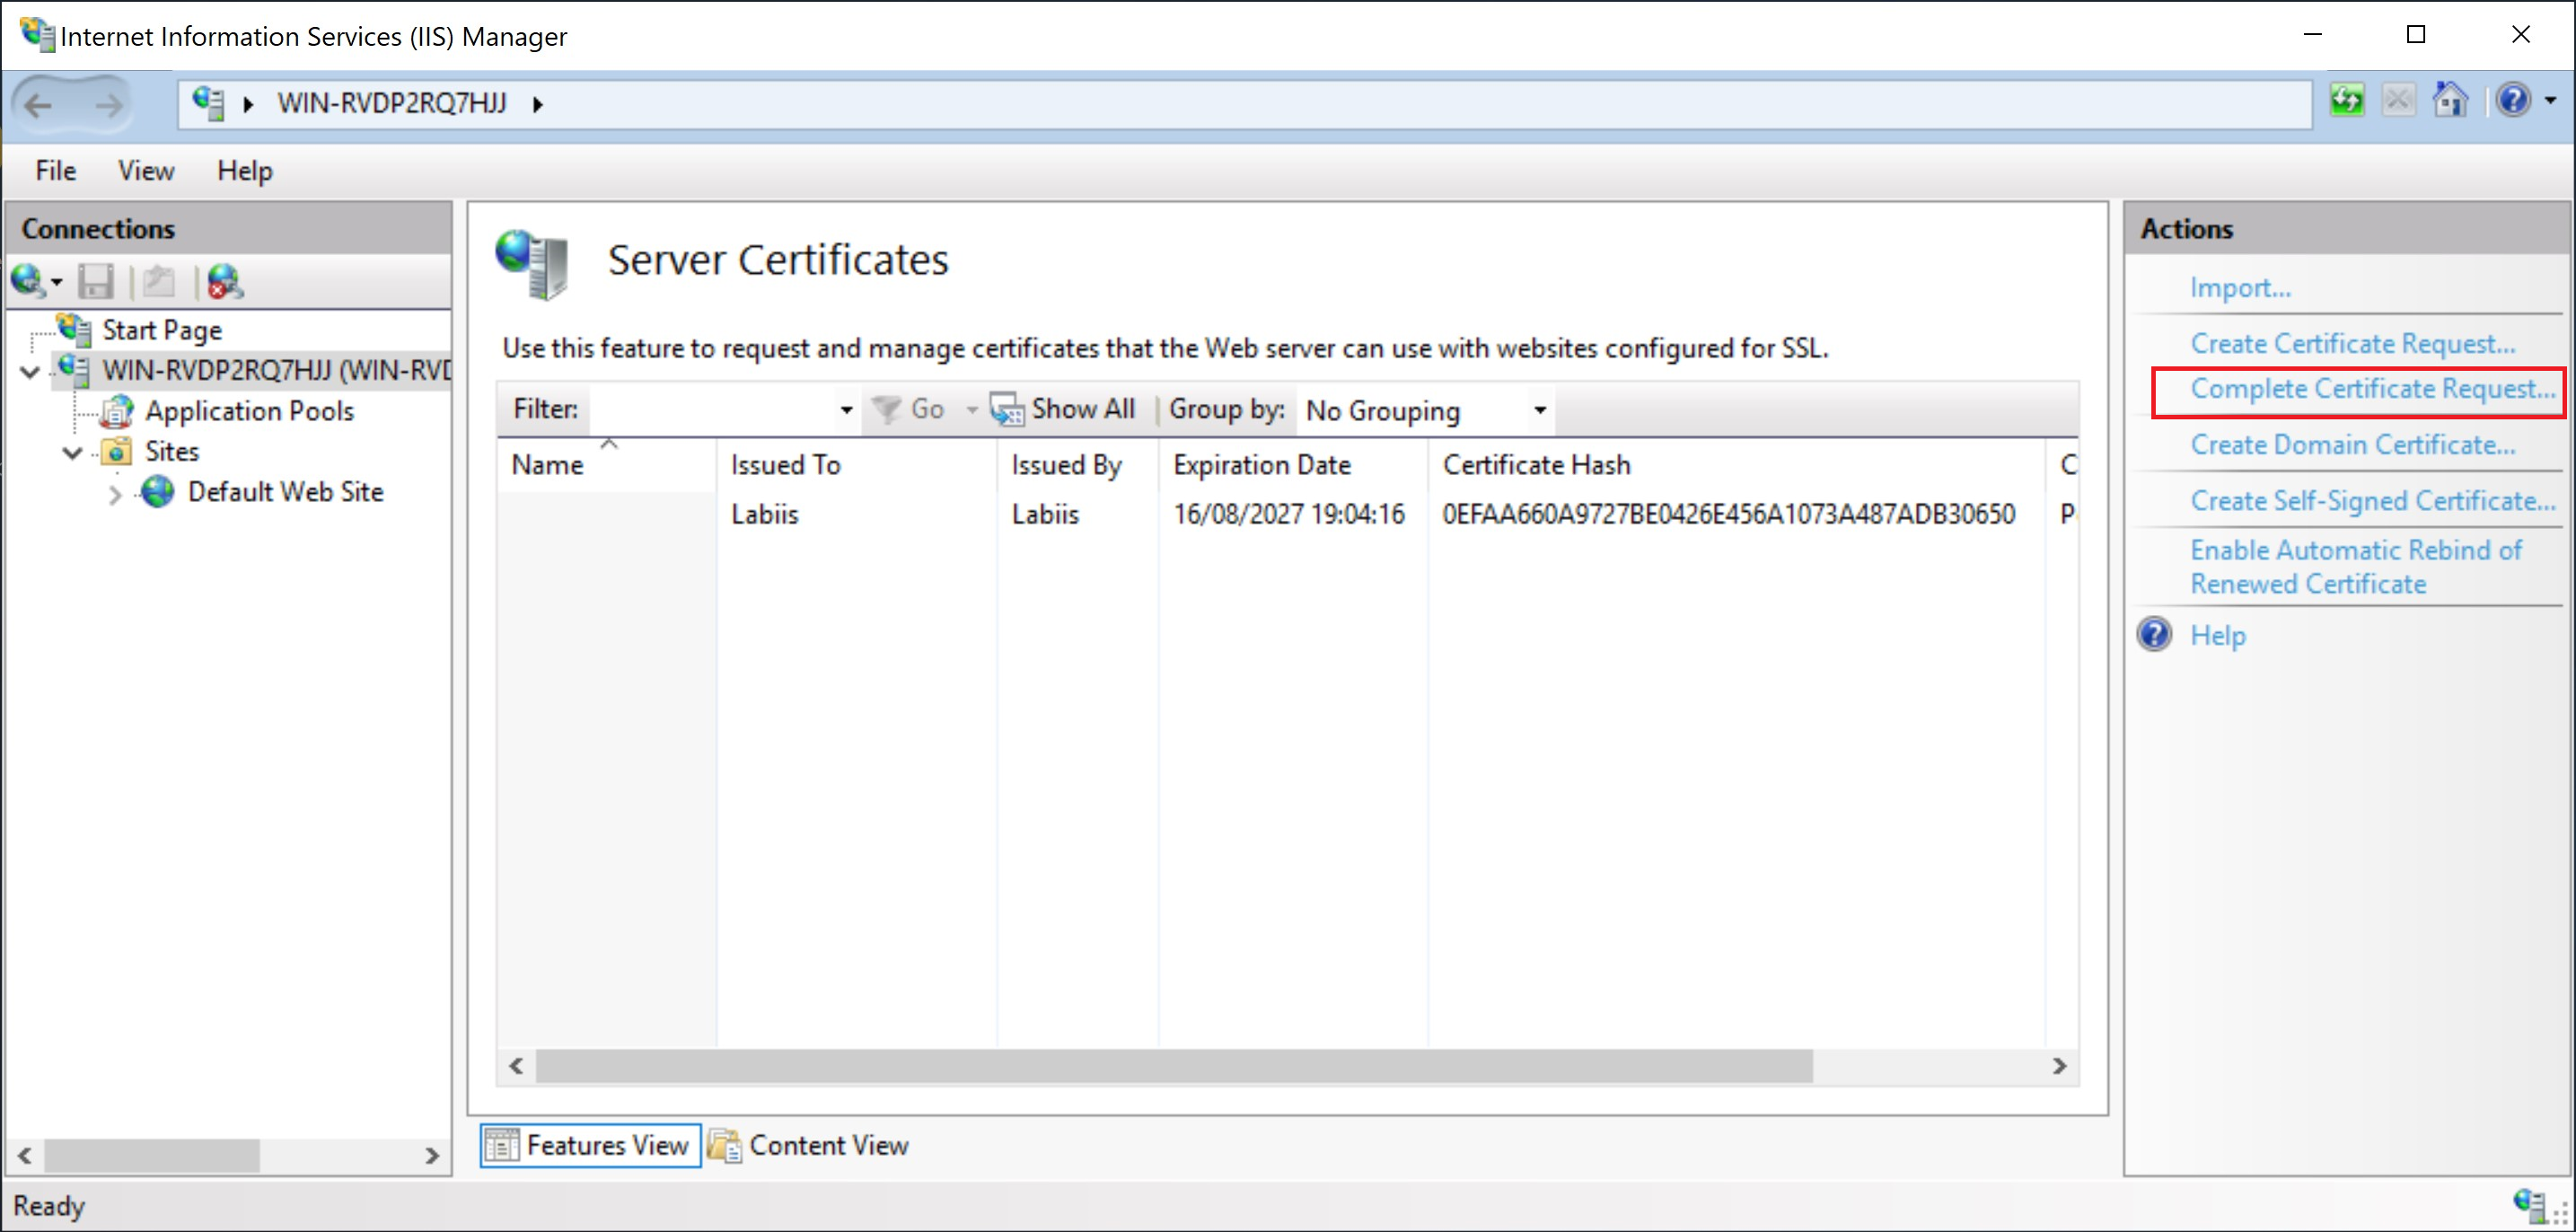 _IIS Manager_, complete el proceso de solicitud de certificado